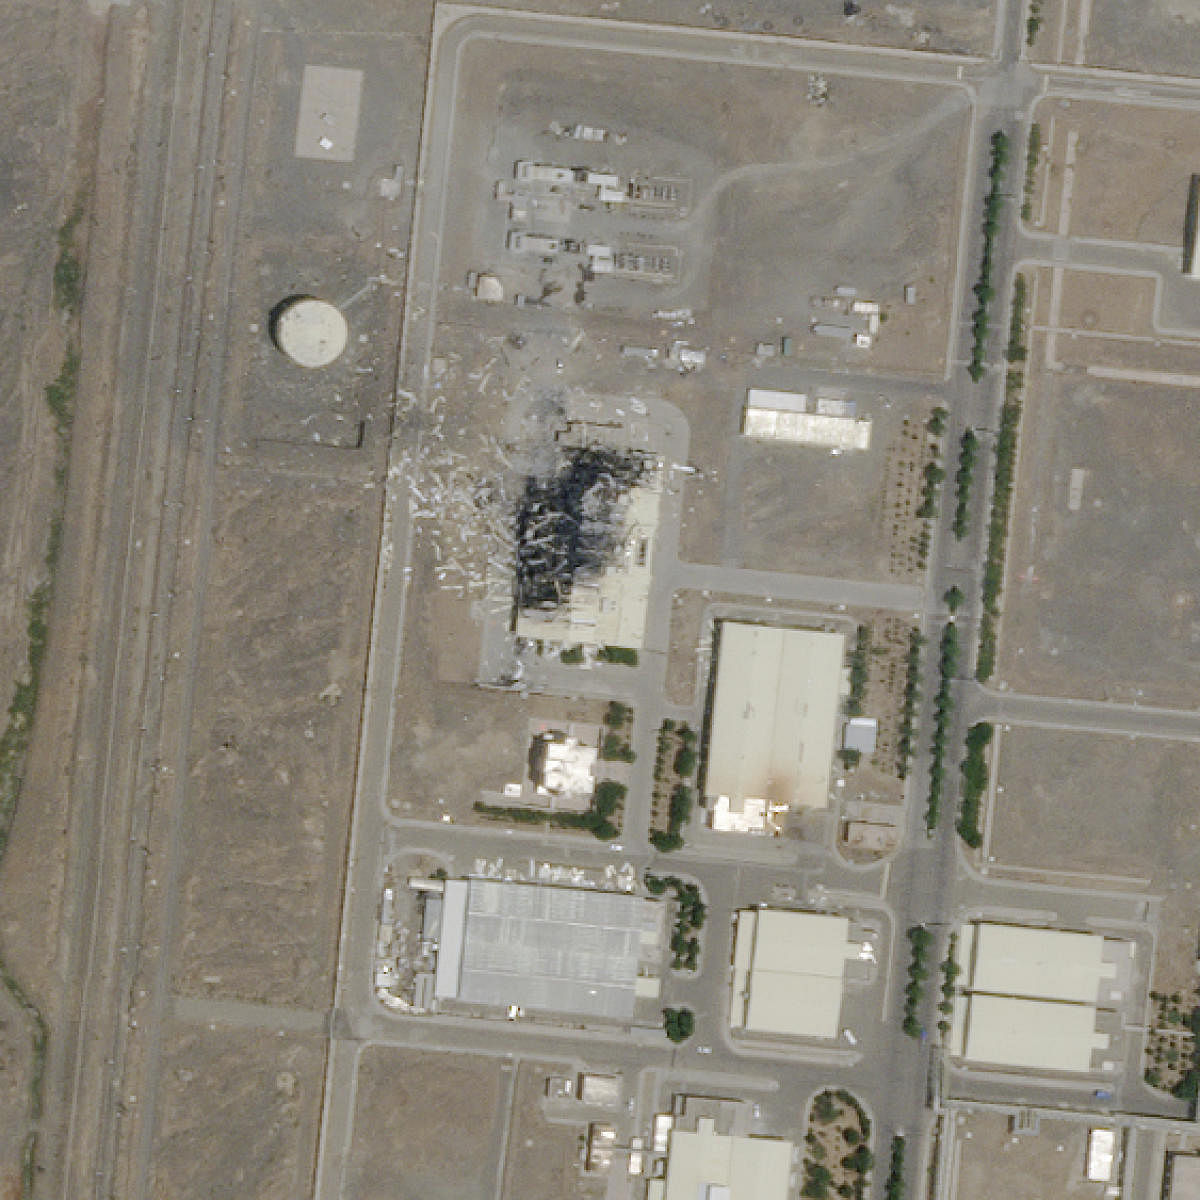 Iran's Natanz nuclear site (AP Photo)